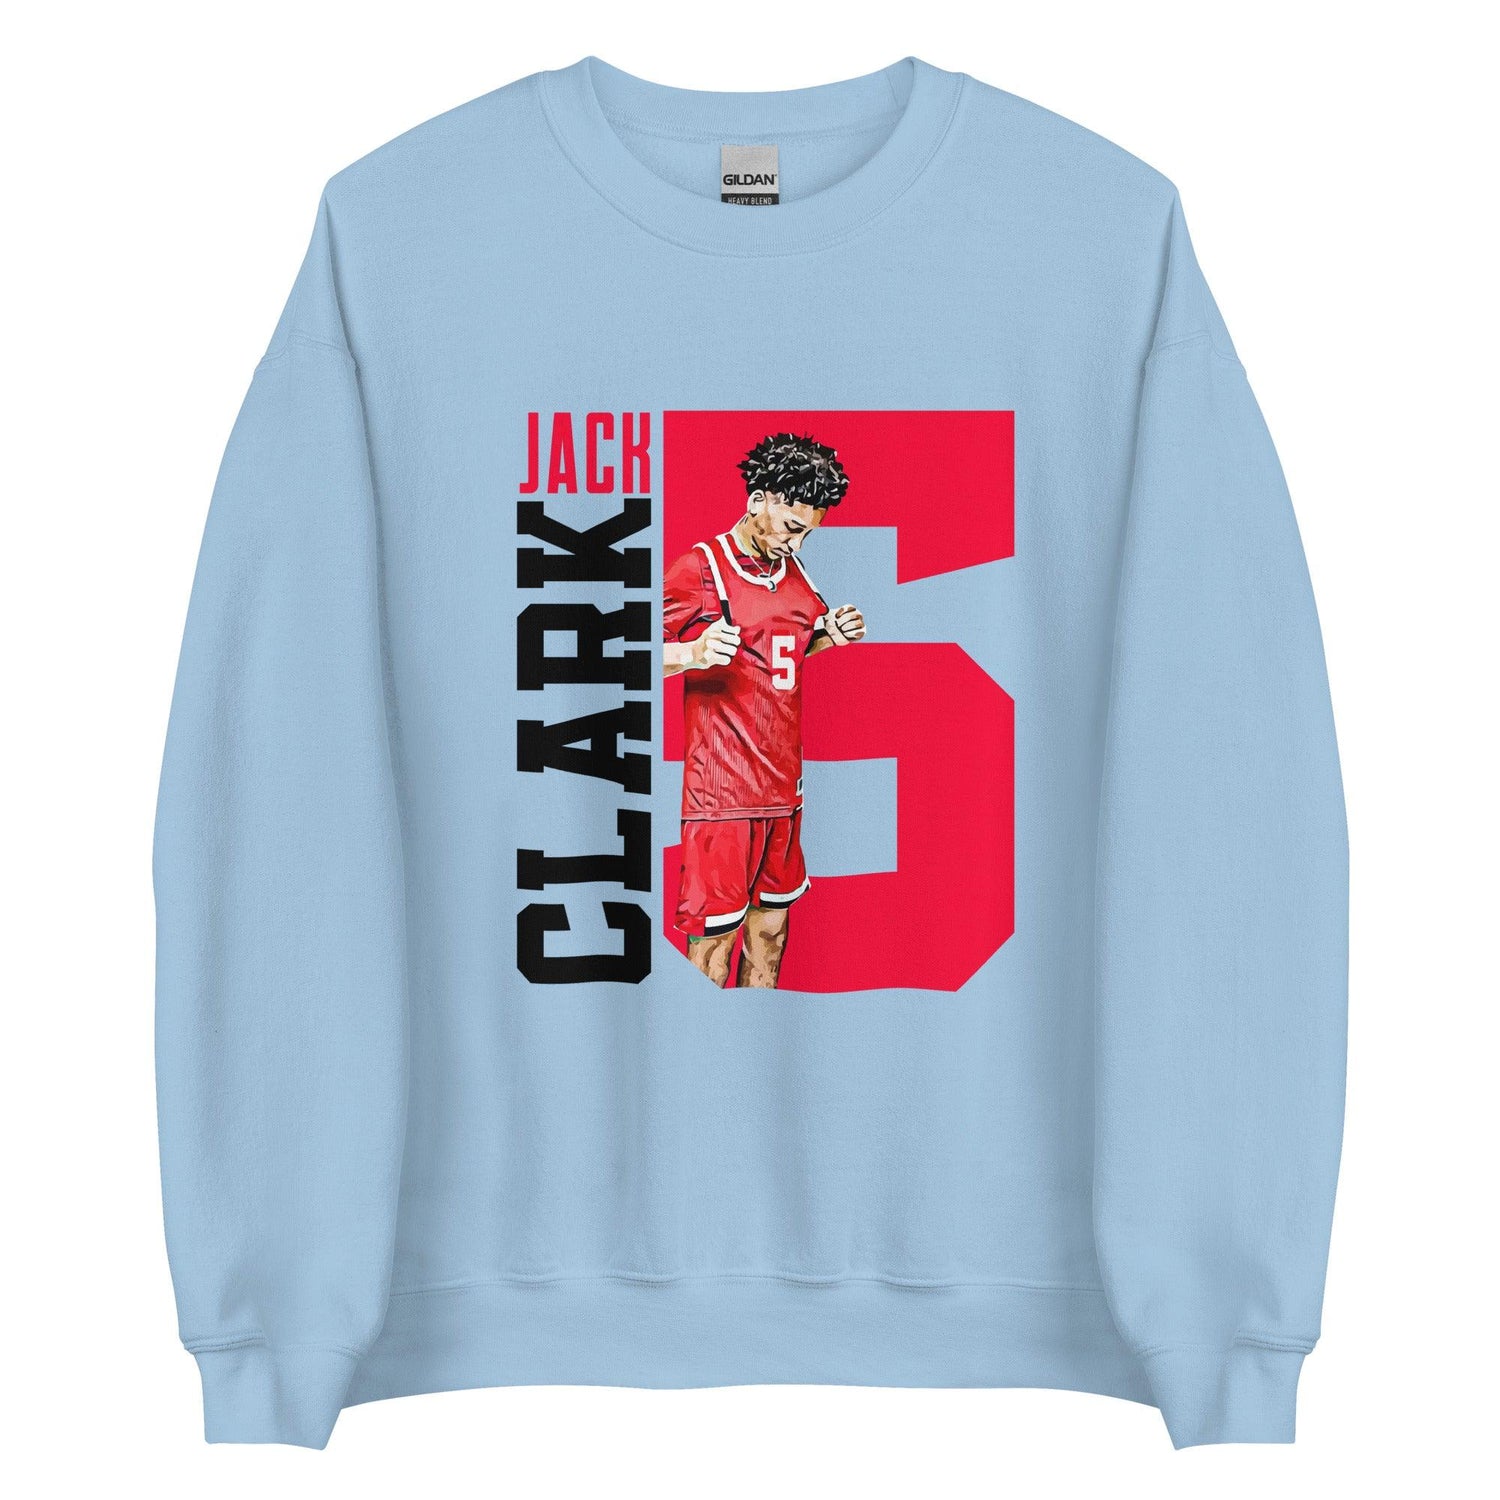 Jack Clark "Gametime" Sweatshirt - Fan Arch